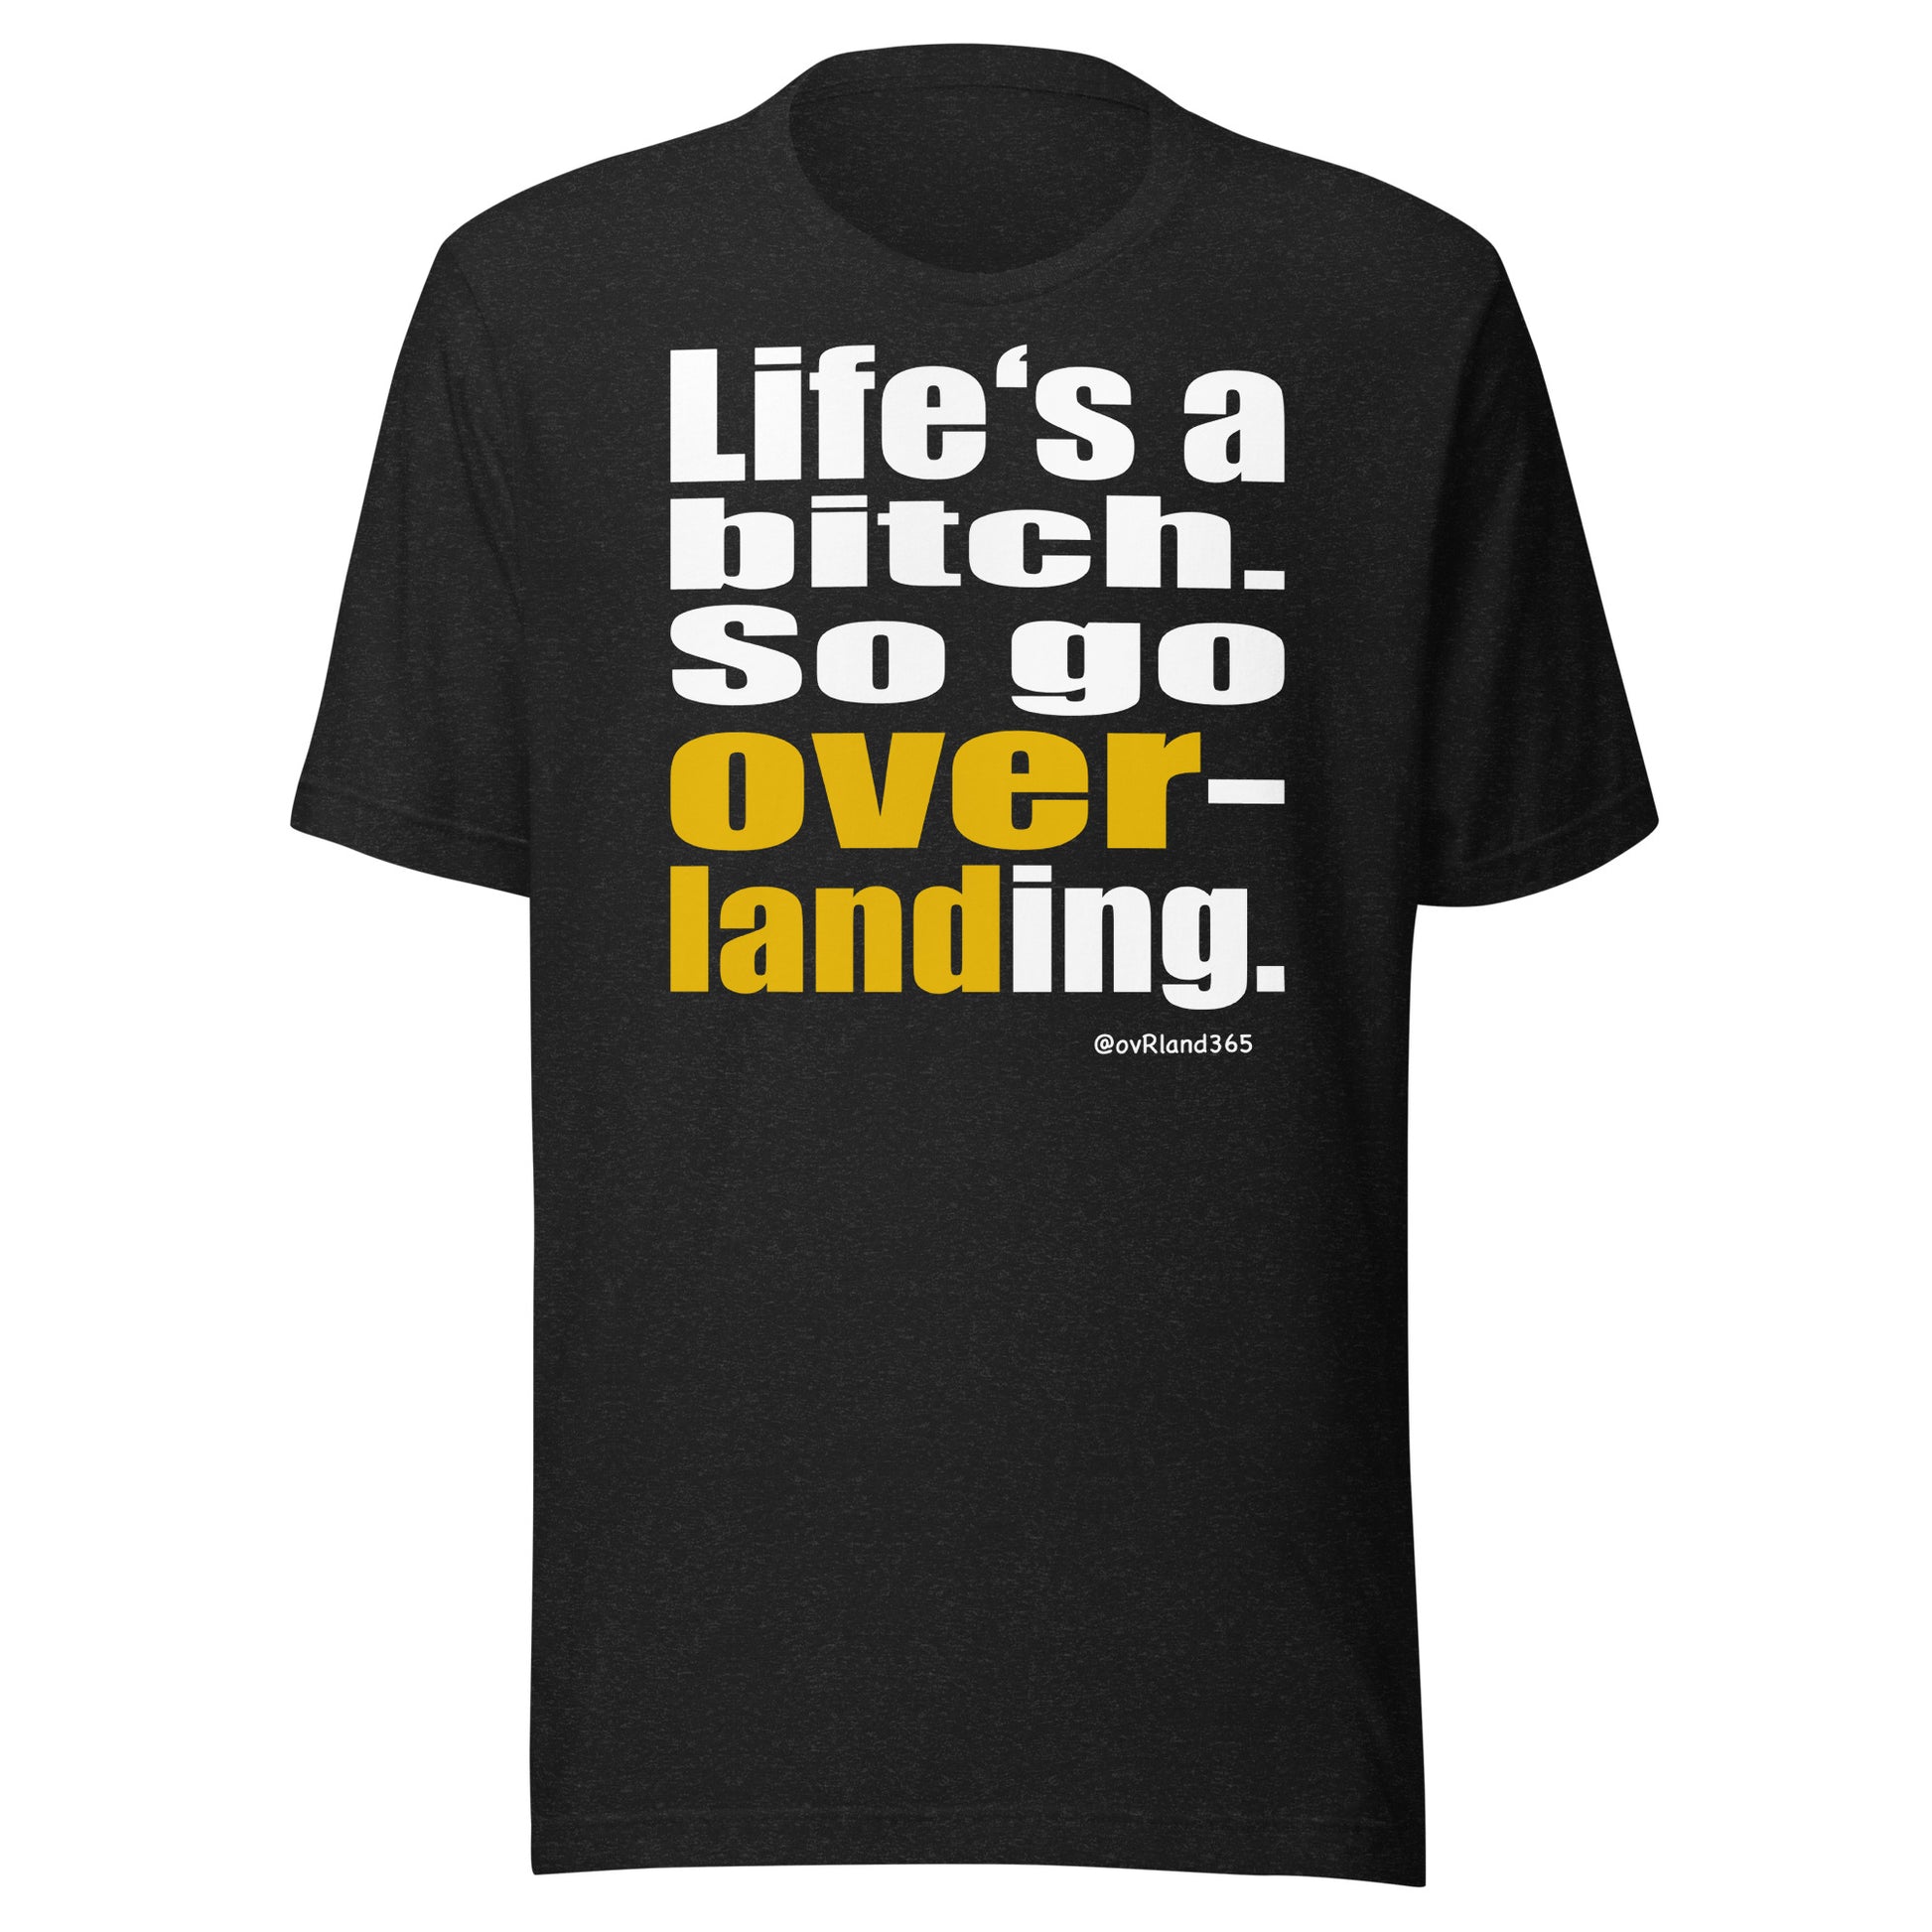 "Life's a bitch. So go overlanding." Blackt-shirt. overland365.com